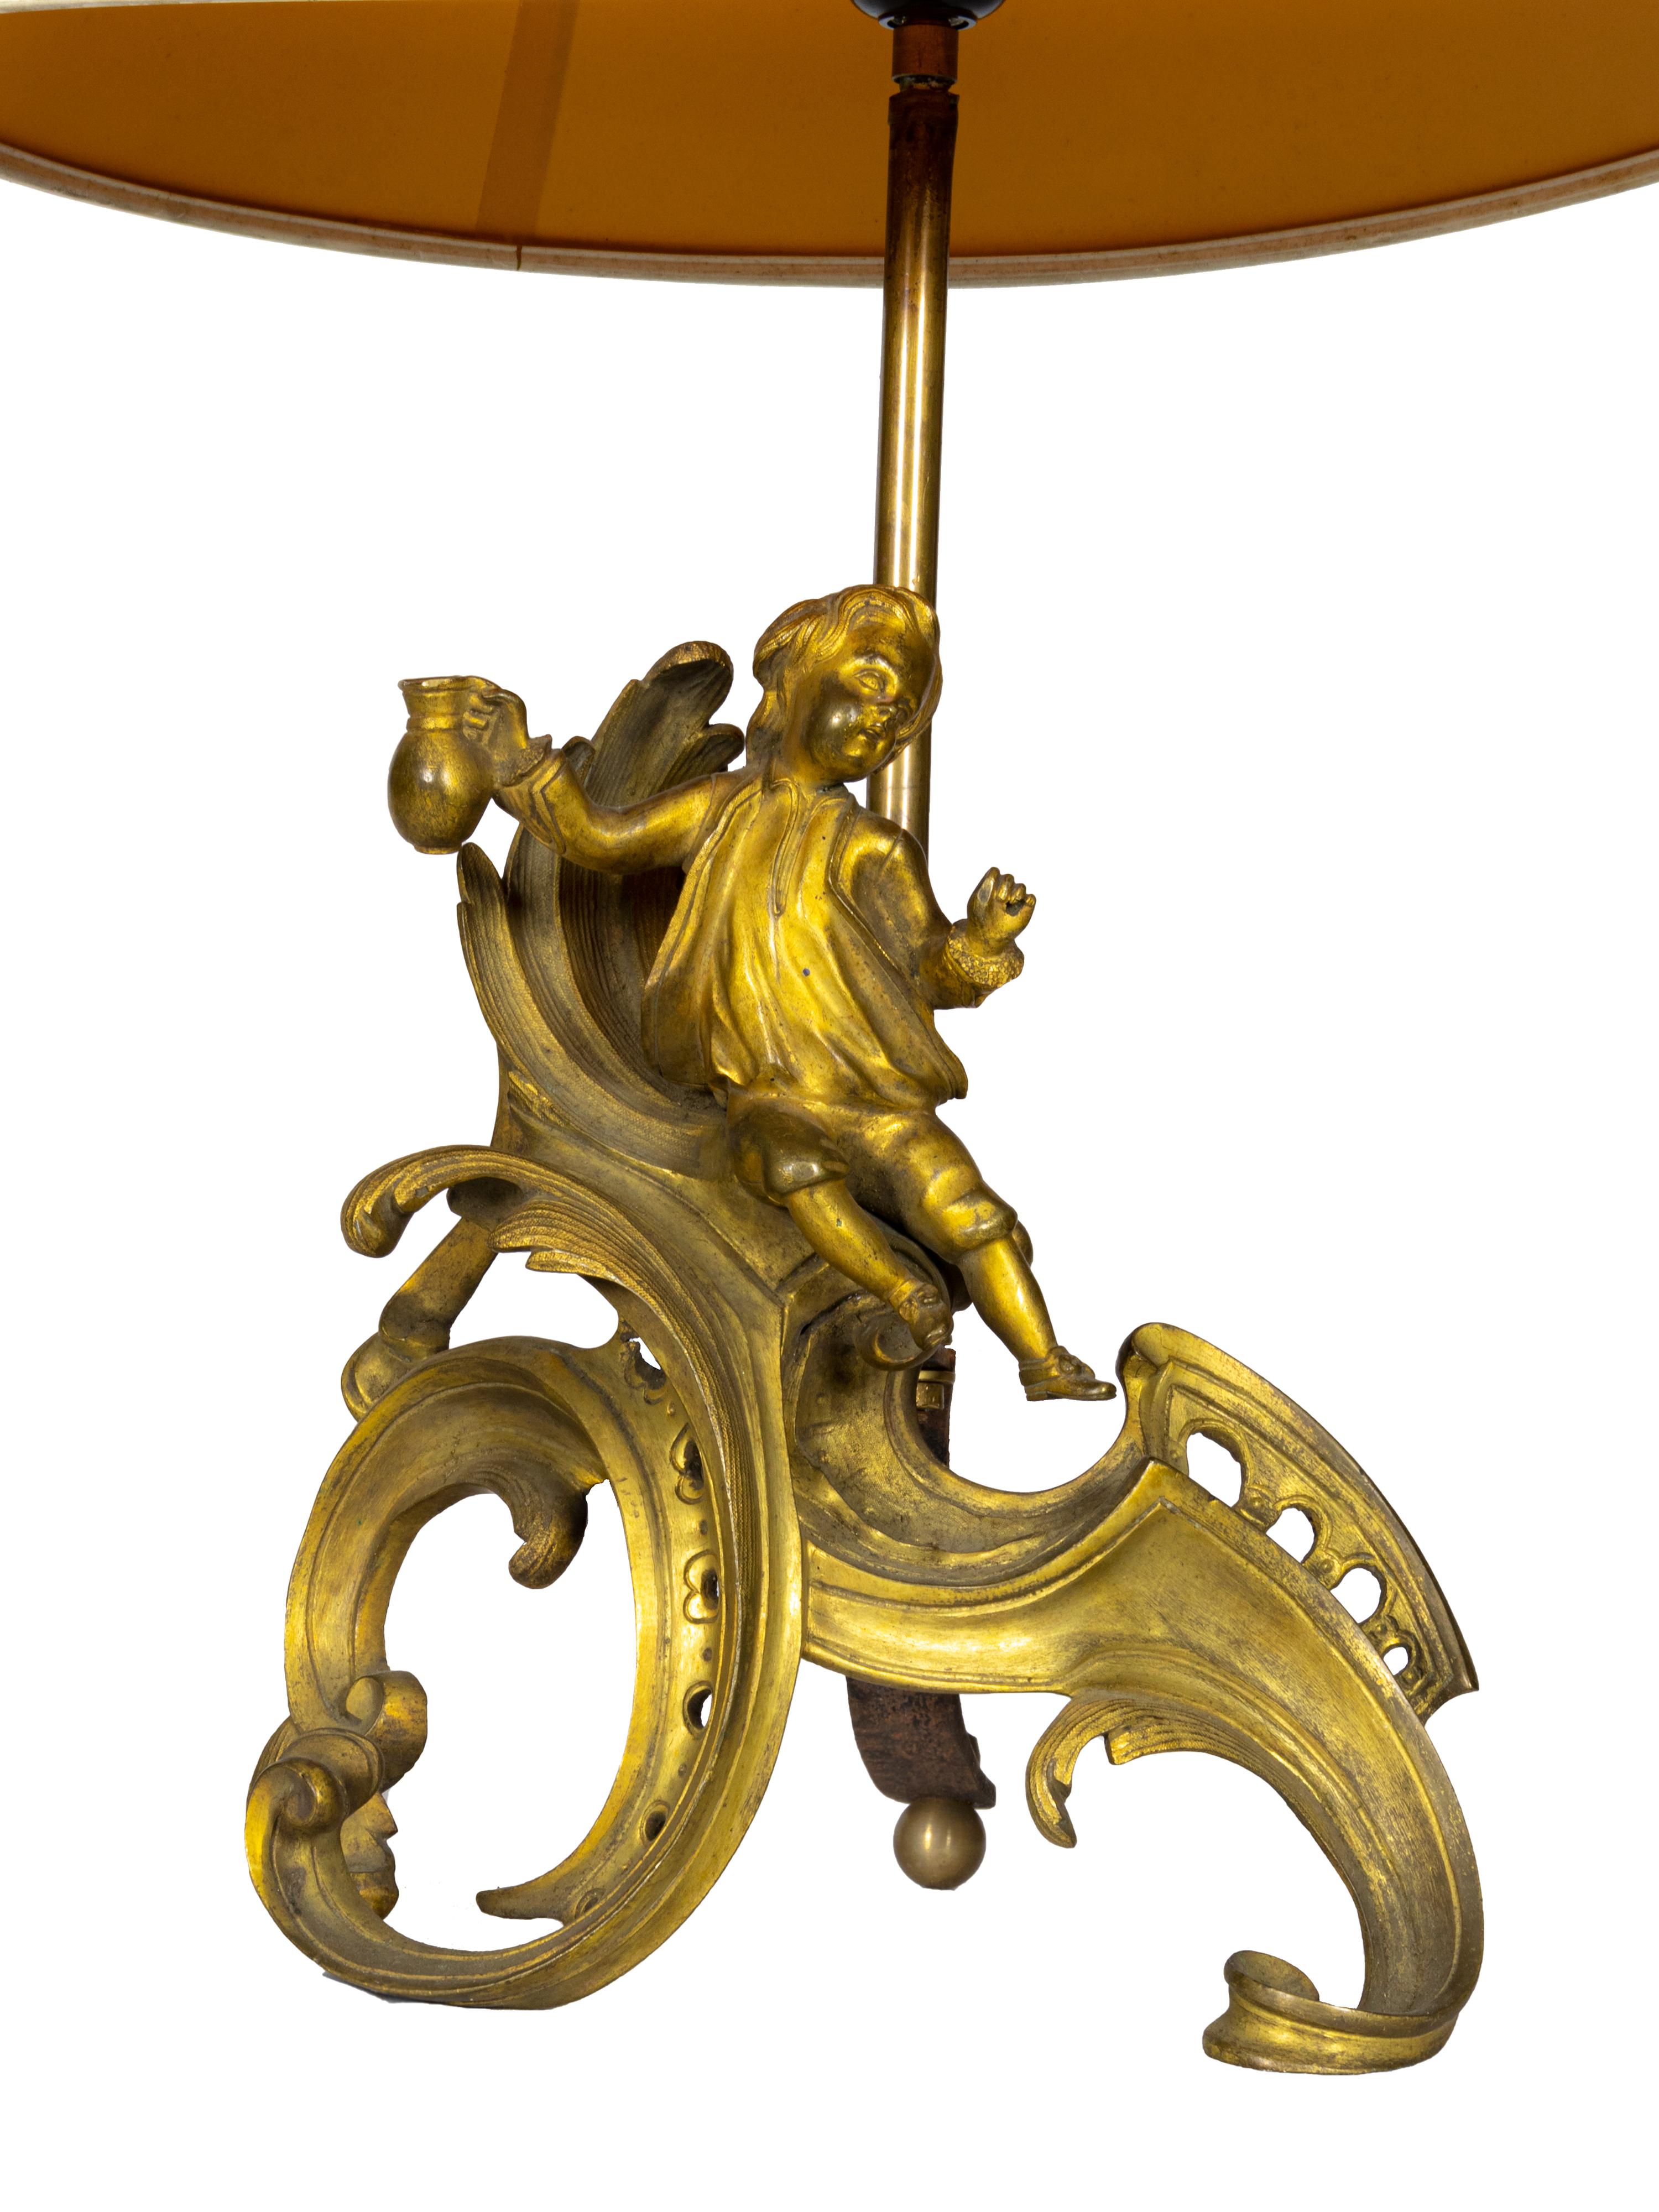 Une qualité élevée  Lampe de table à chenet de style Louis XV en bronze doré et cuivre, avec des détails feuillagés joliment moulés et un décor de Putti en bronze doré de style Louis XV, France, 19e siècle, avec patine d'usage.

Hauteur de la statue